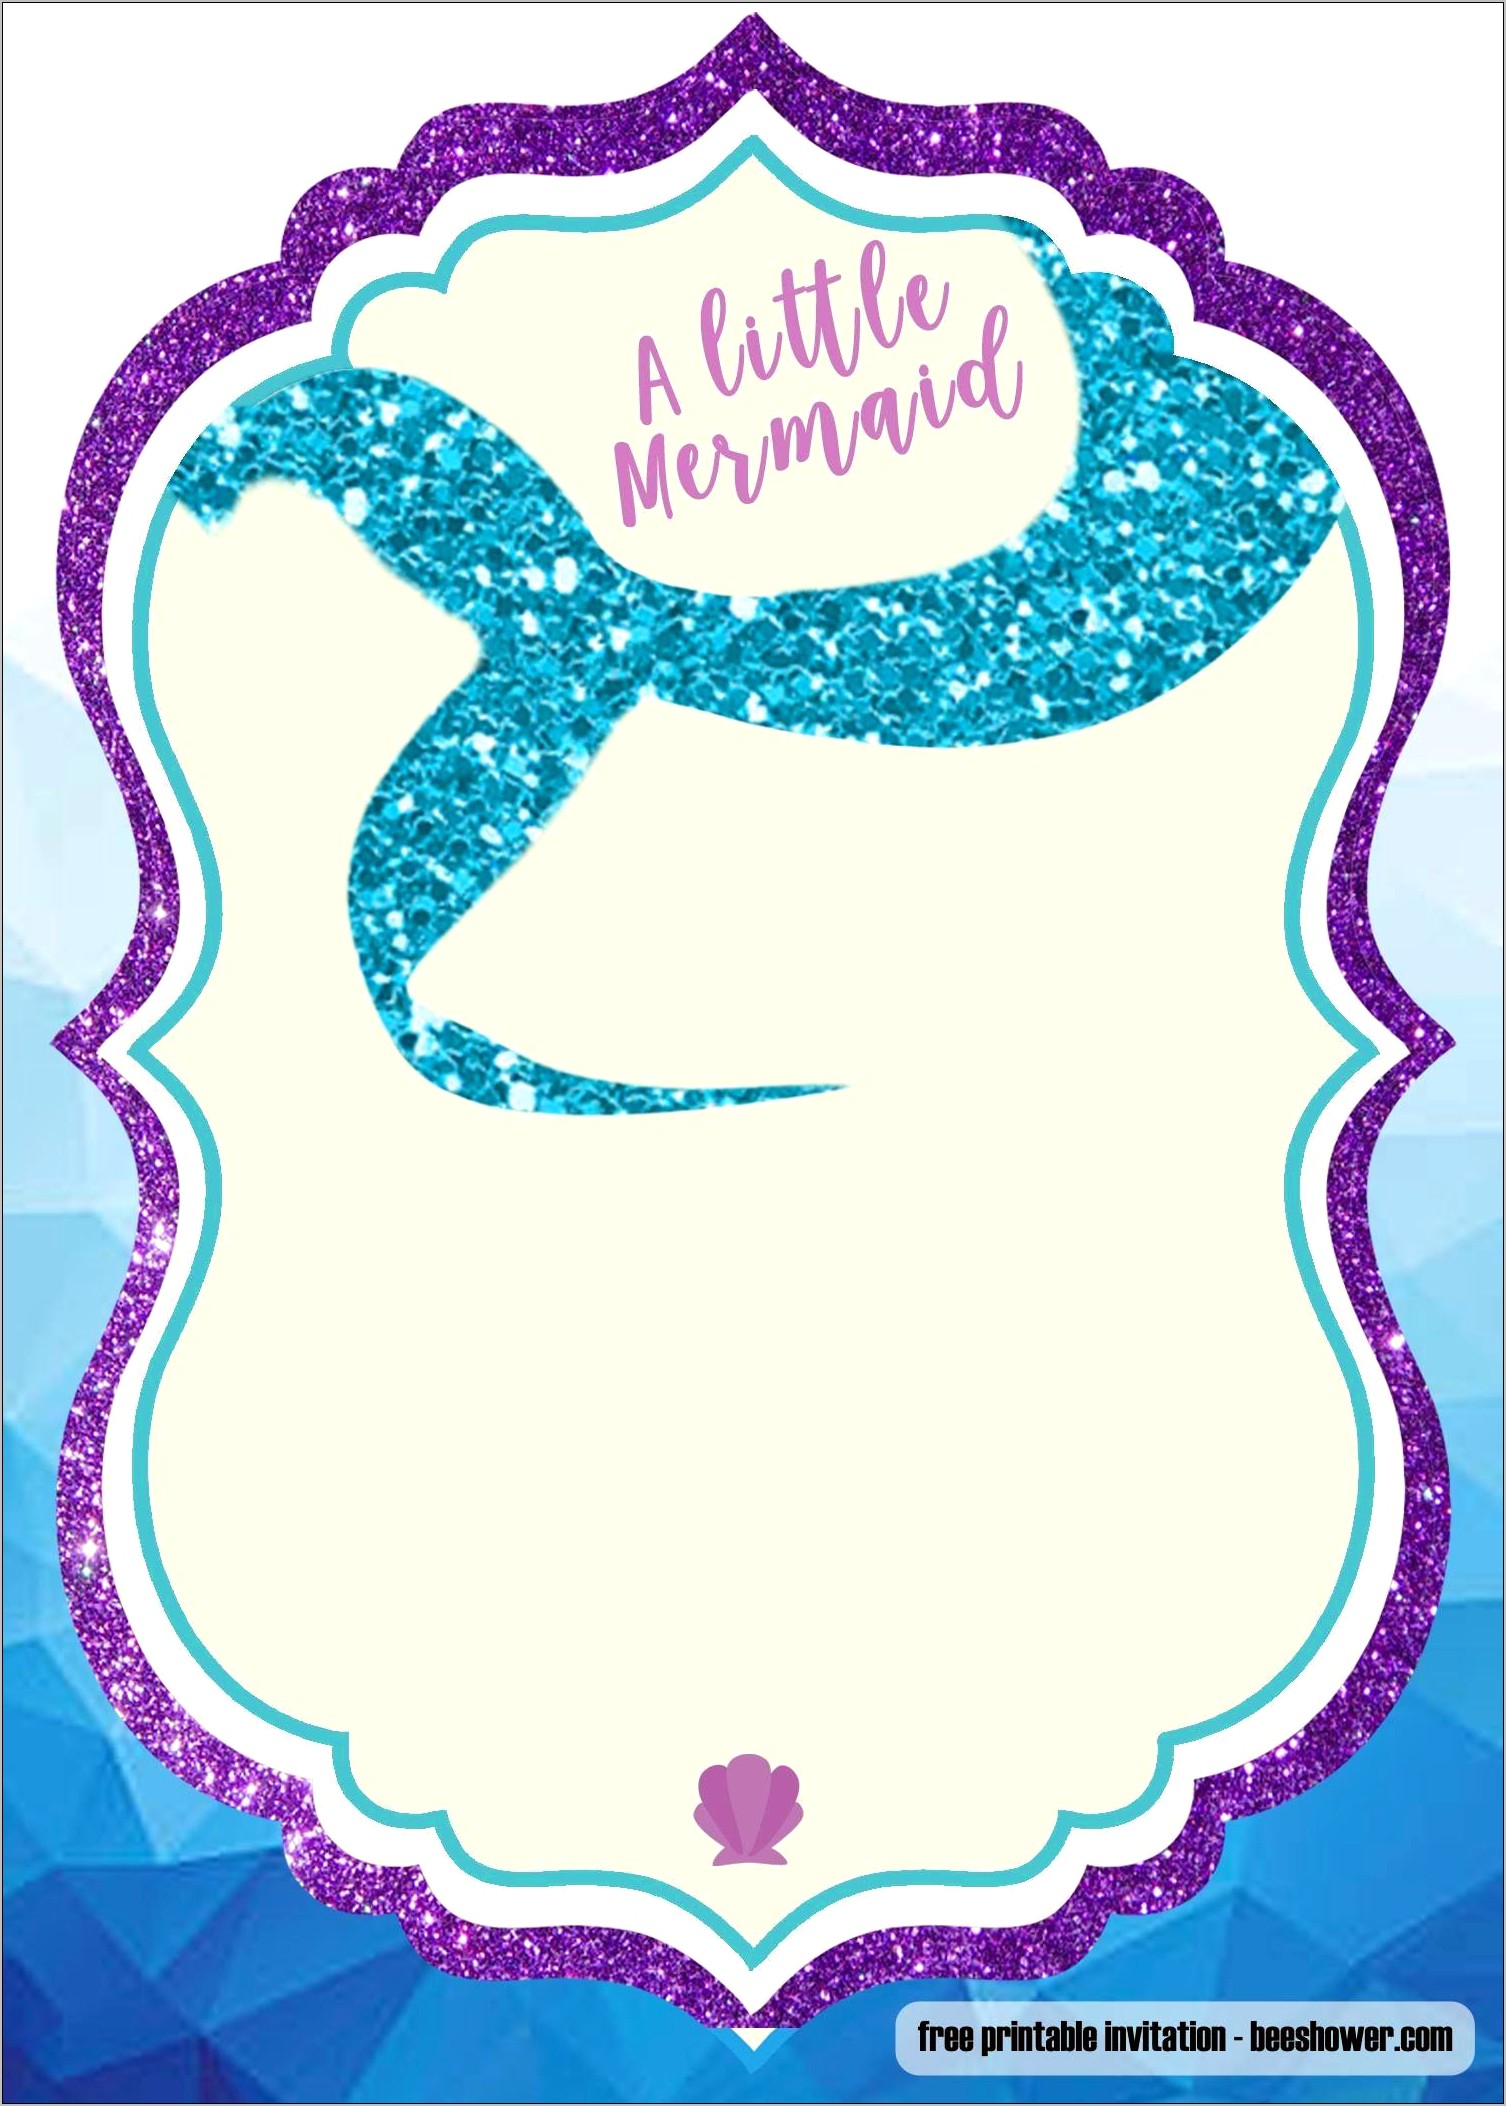 Free Printable Mermaid Birthday Invitation Templates